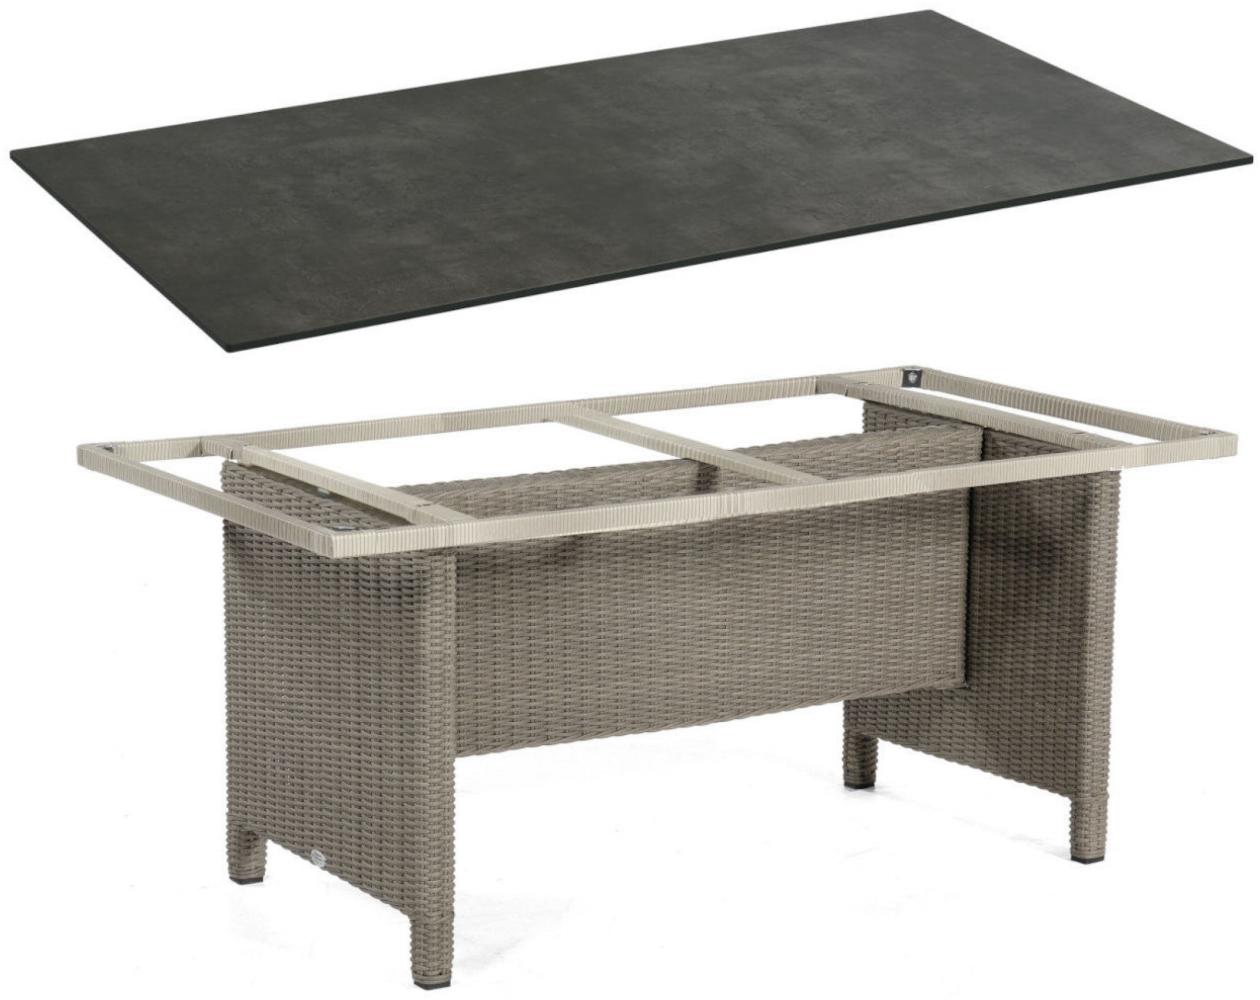 Sonnenpartner Gartentisch Base 160x90 cm Polyrattan stone-grey Tischsystem Tischplatte Compact HPL Shiplap-Pinie 80051001 Bild 1